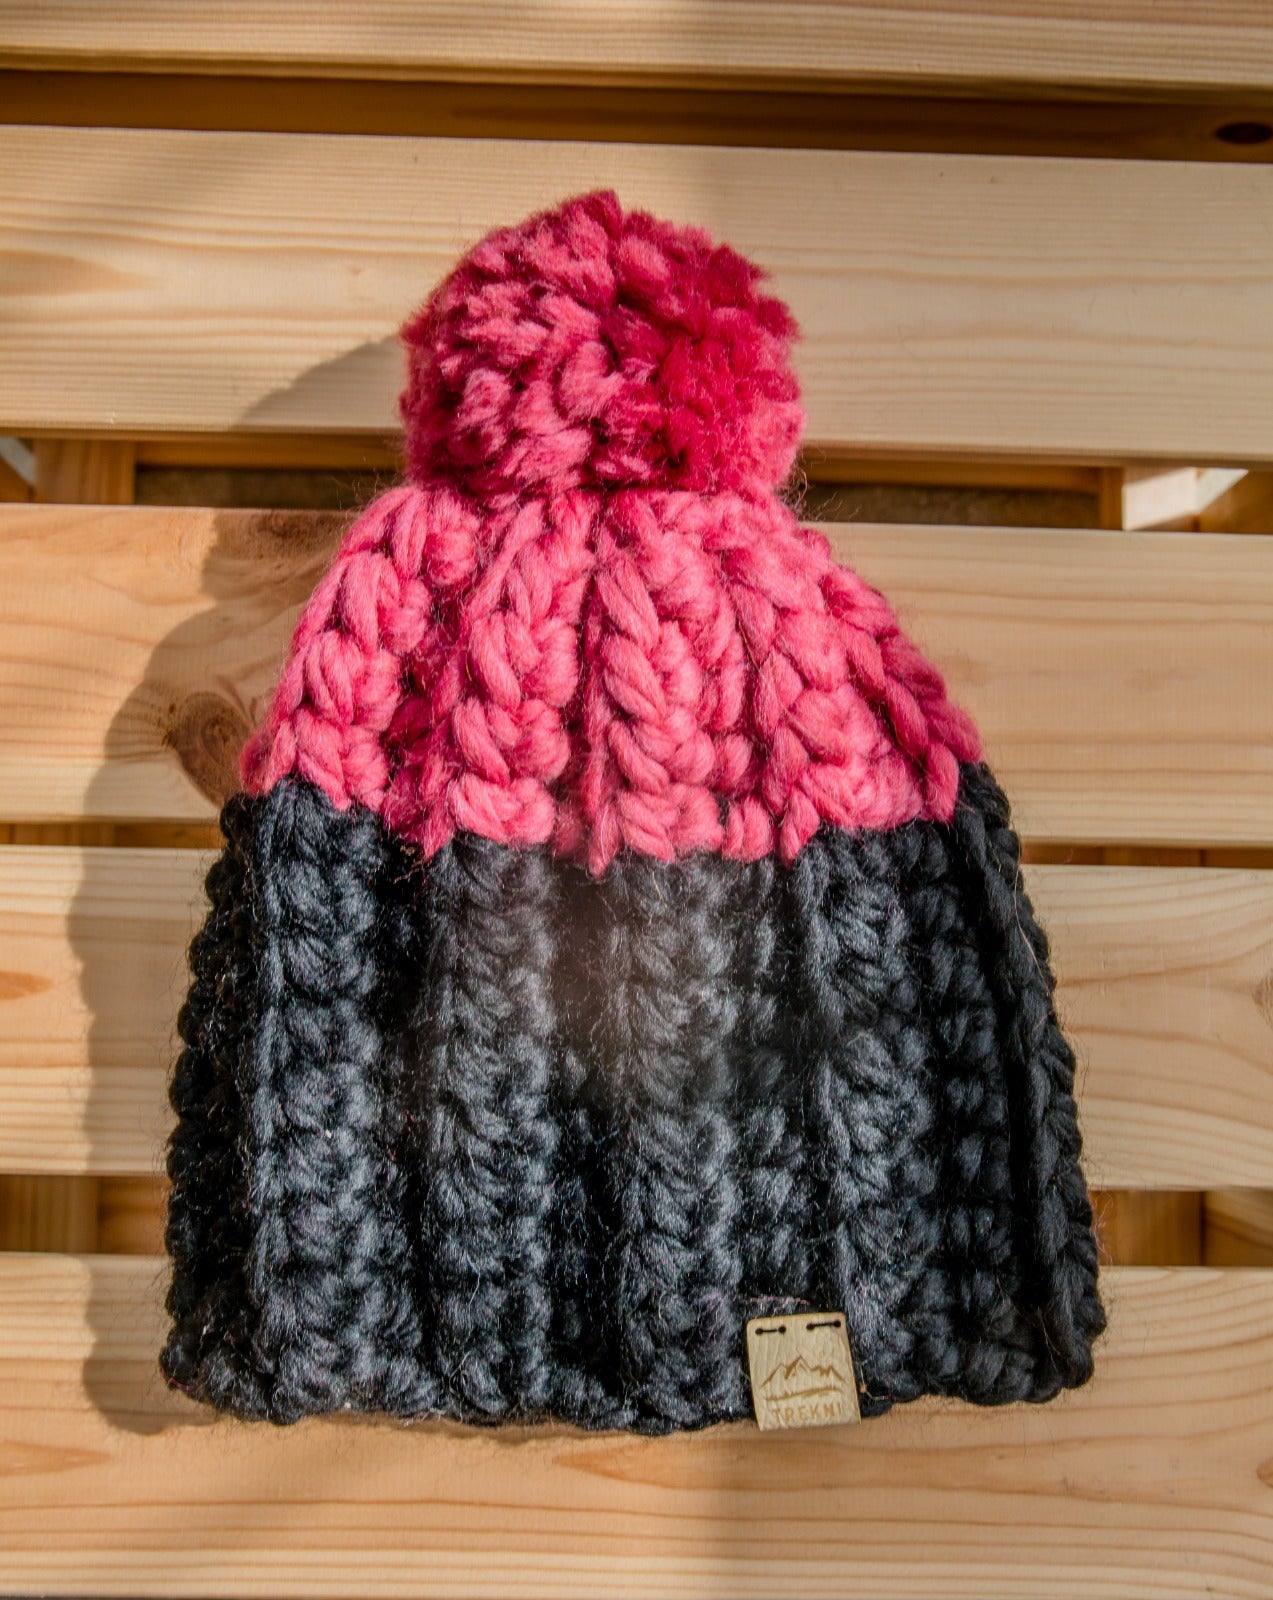 Wool hats